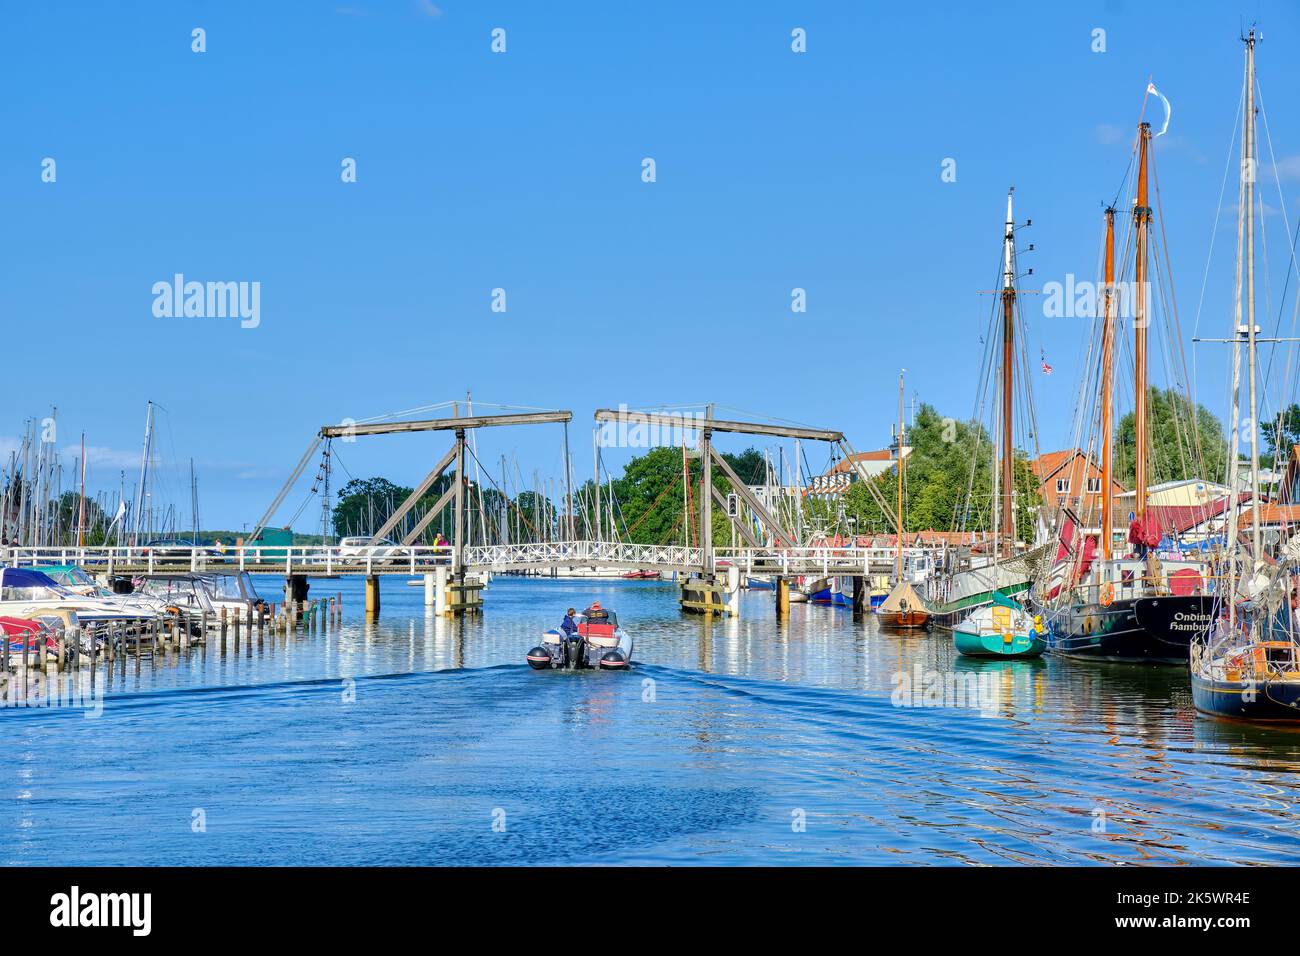 Blick auf den Stadthafen von Greifswald Wieck mit historischer hölzerner Bascule-Brücke über den Ryck, Mecklenburg-Vorpommern, Deutschland. Stockfoto